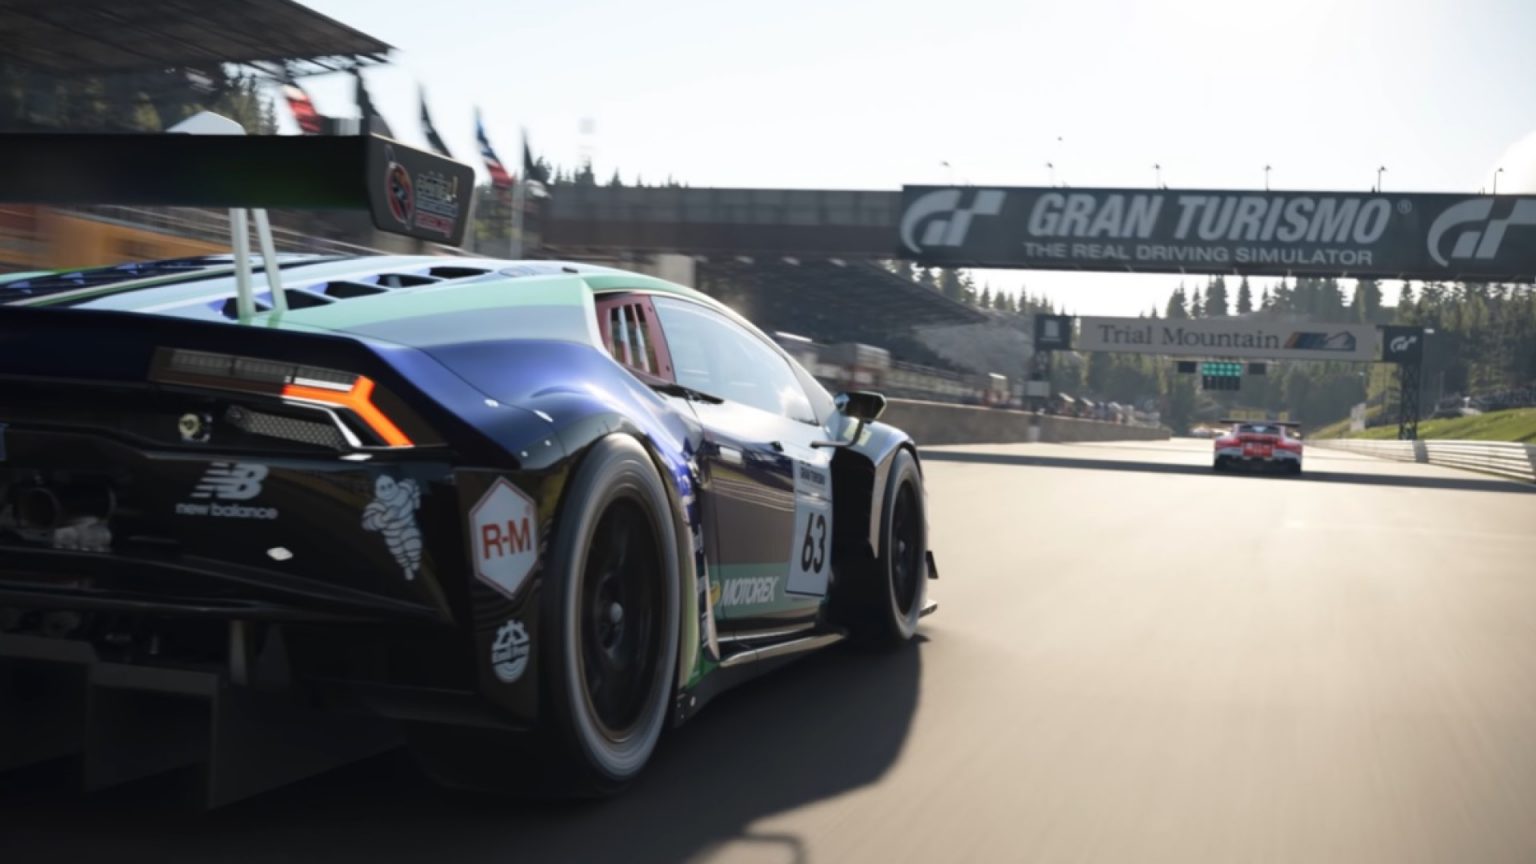 I begynnelsen av august vil Gran Turismo 7 motta fire nye biler, - sier produsenten av serien